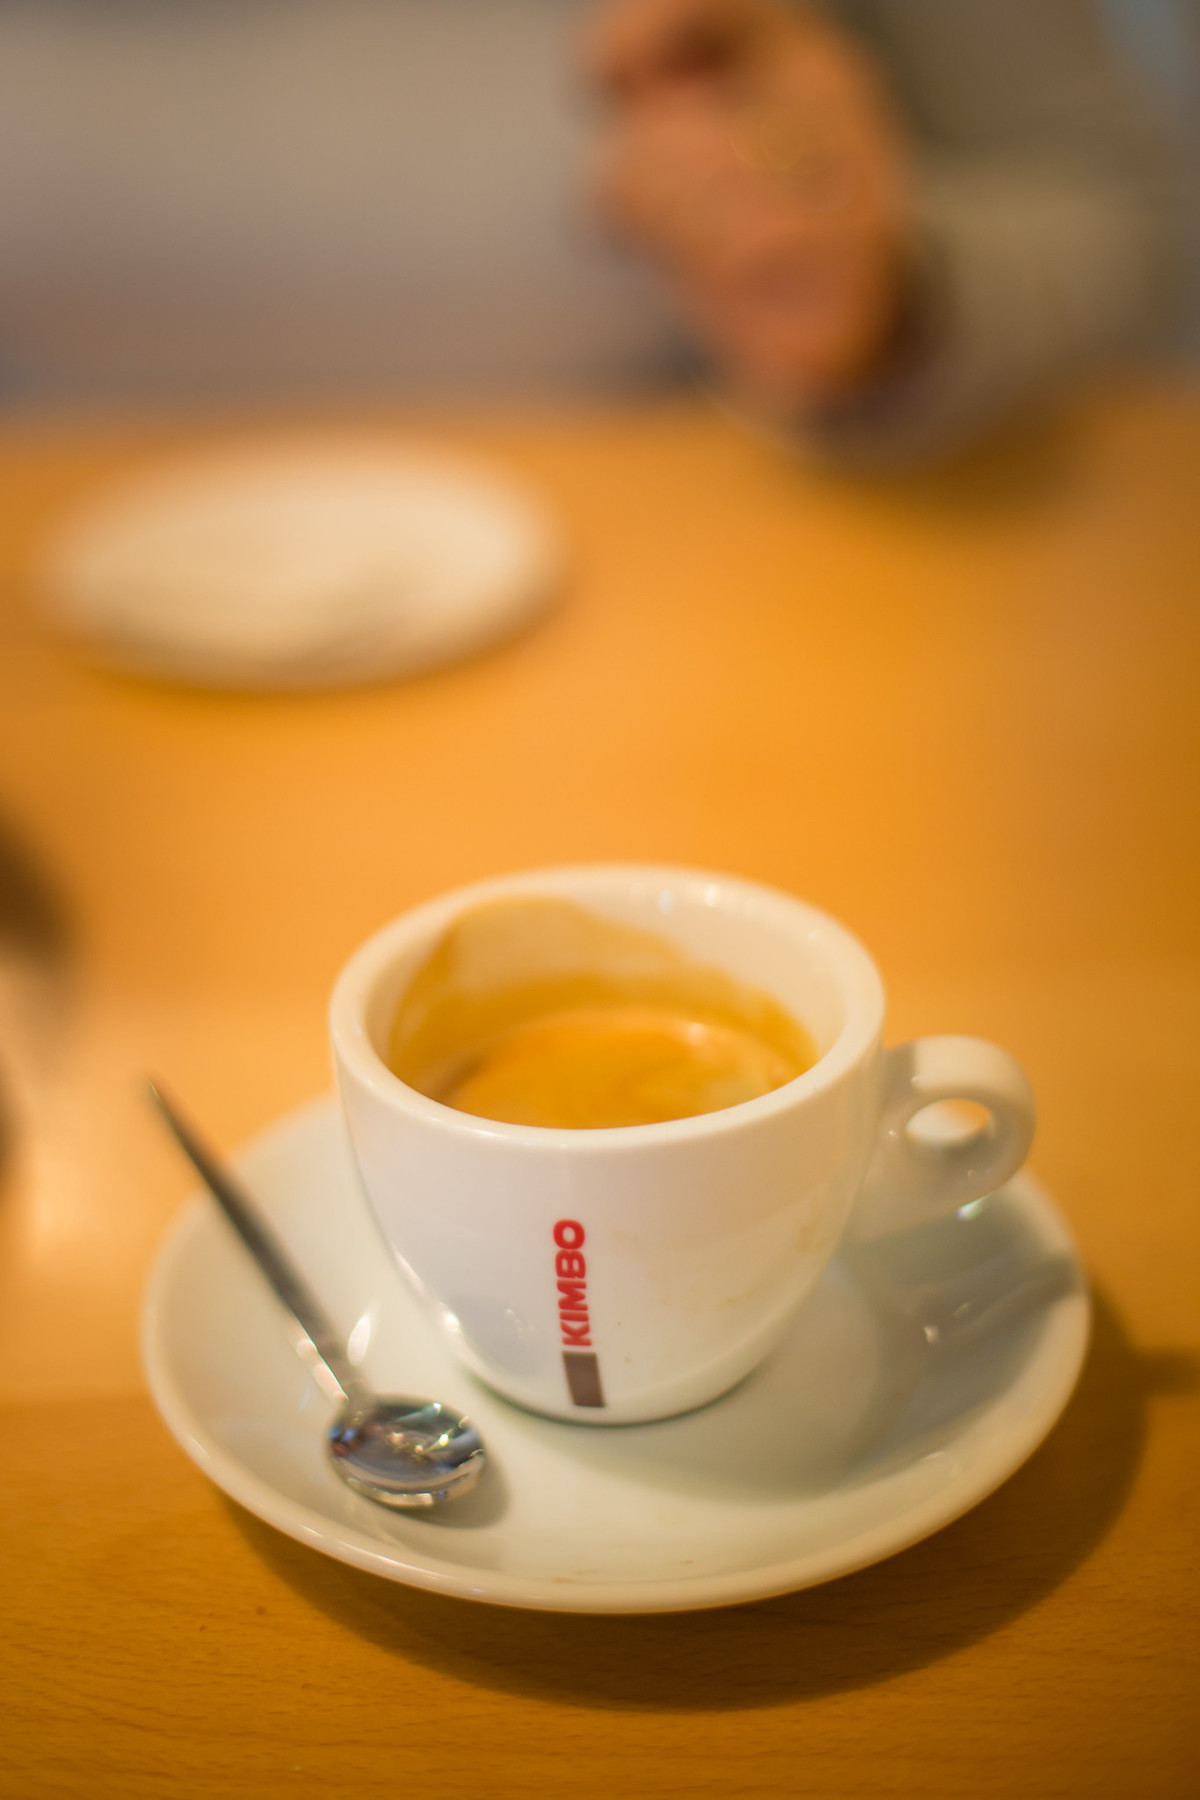 Passalacqua Neapolitan Coffee Maker Cuccumella - Crema